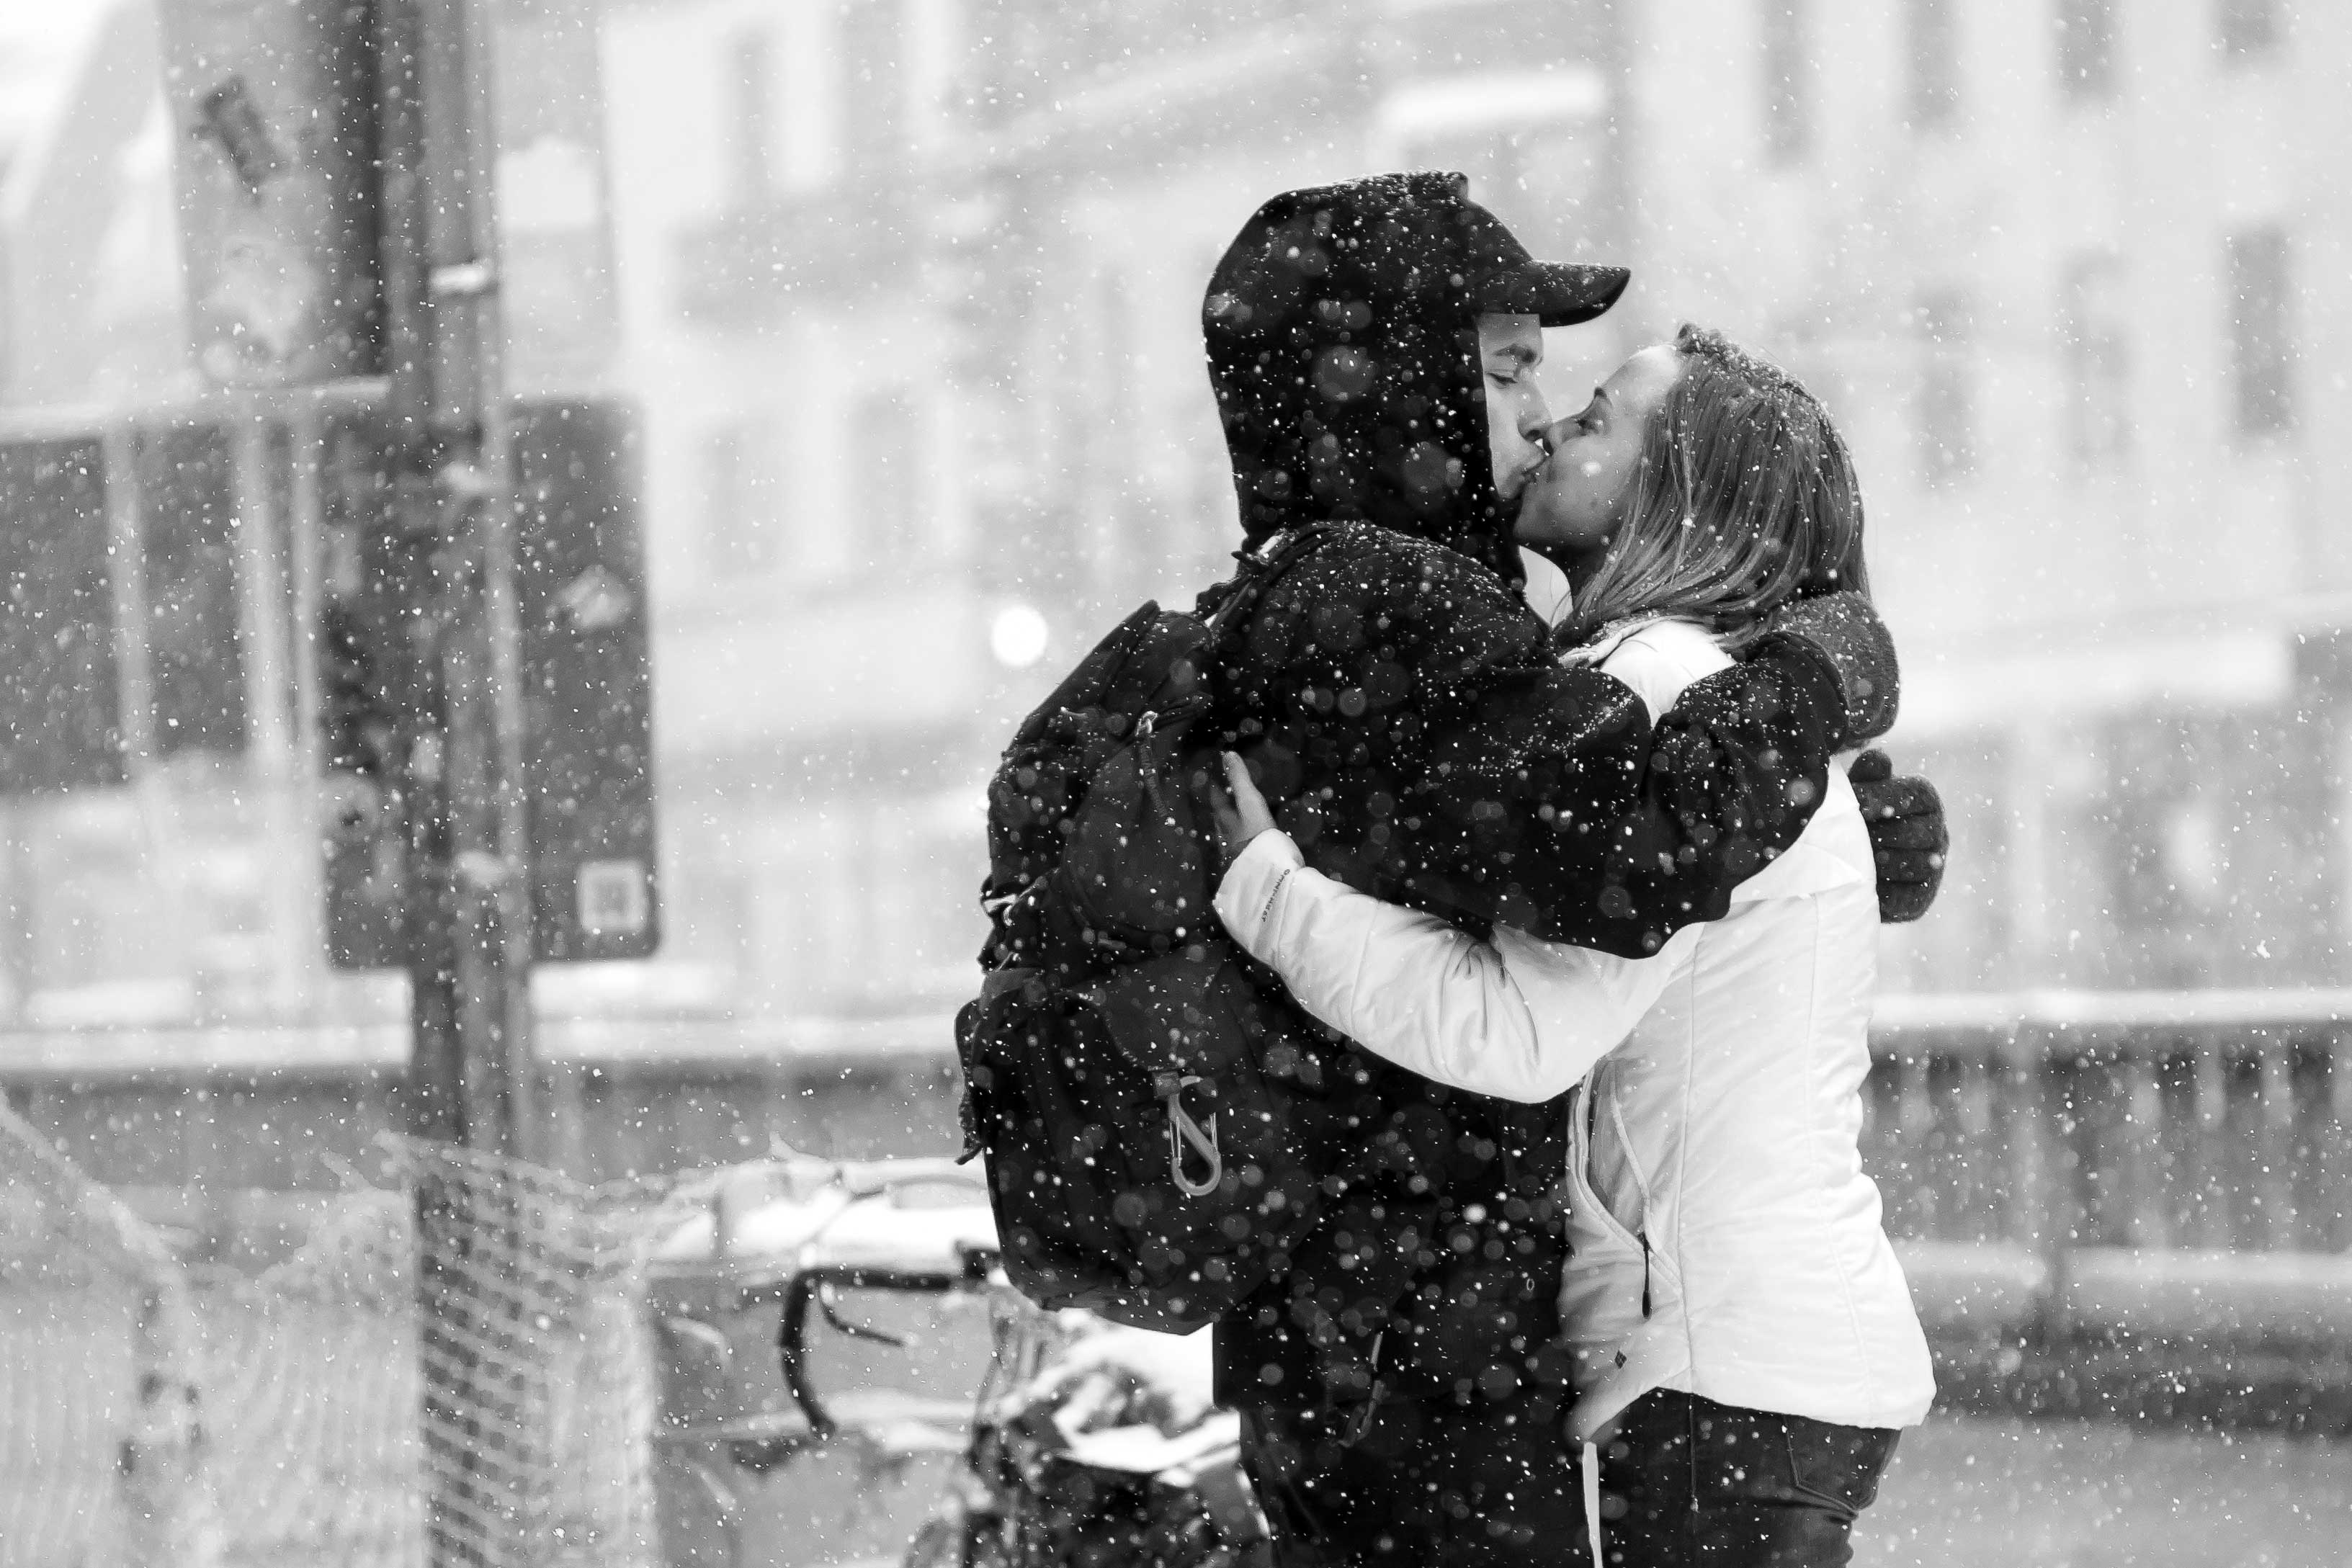 piace sentire sfondi,fotografia,istantanea,abbraccio,bianco e nero,neve